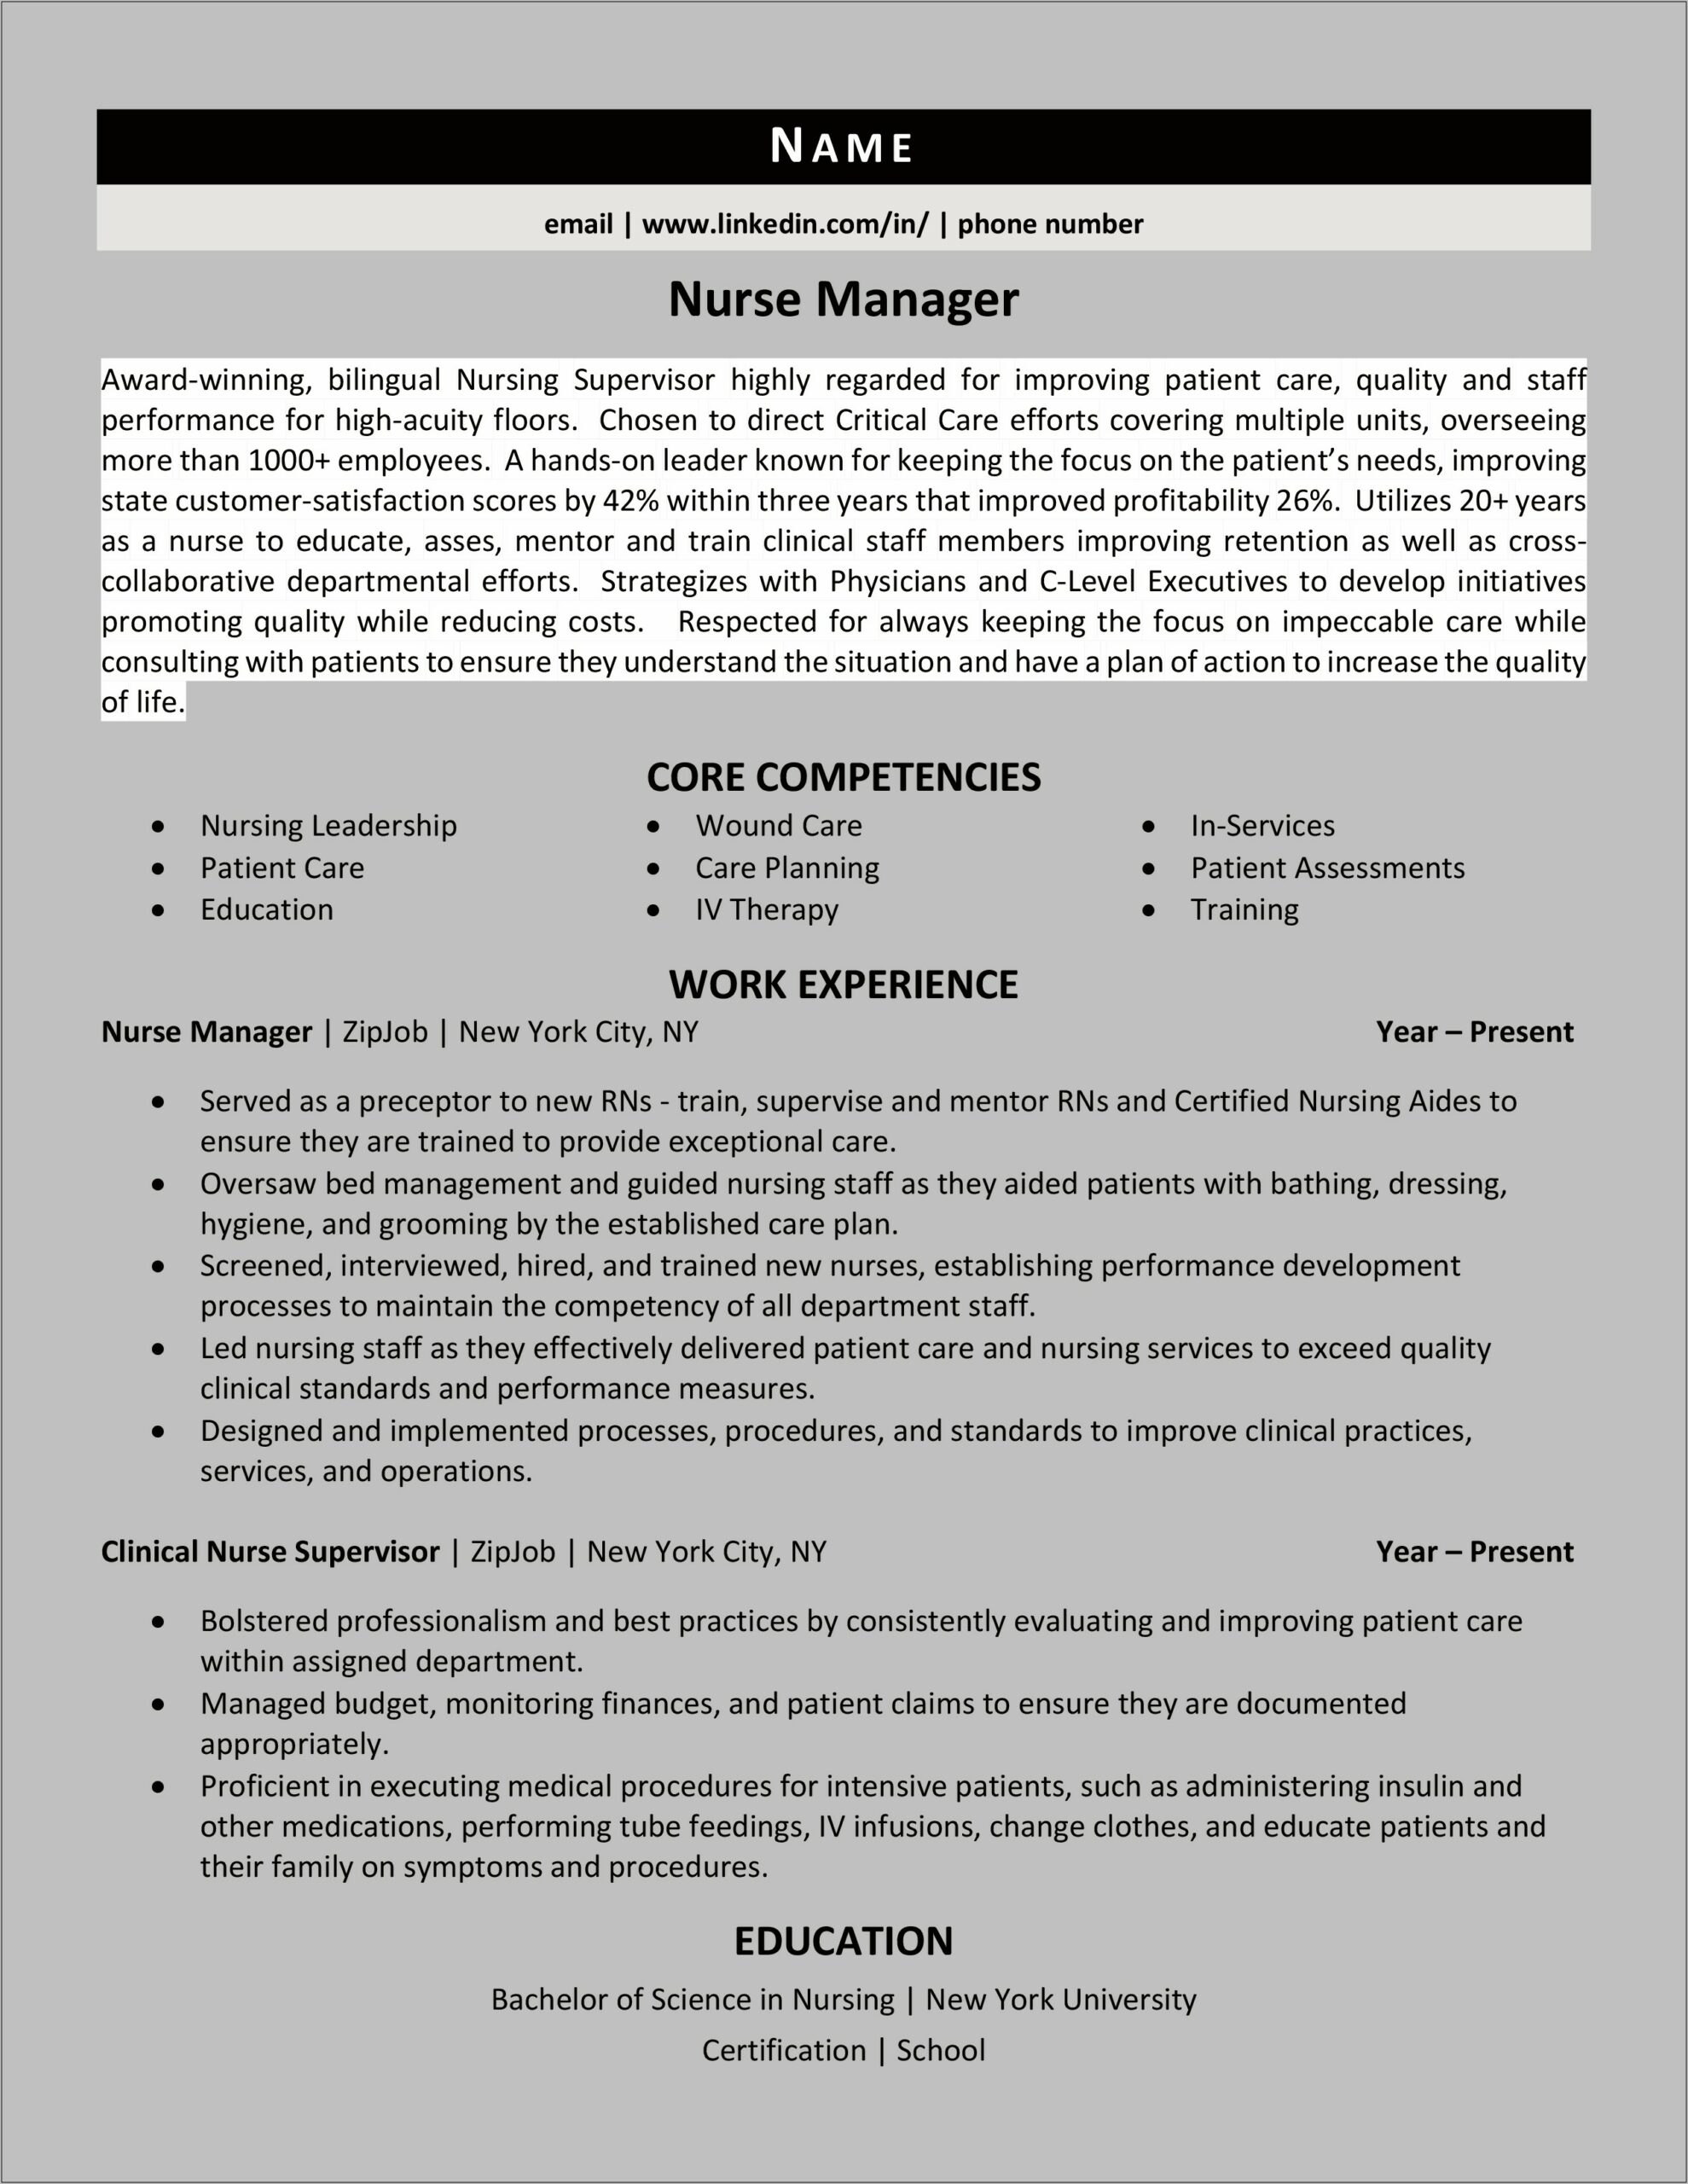 Resume Objective Statememt For Aquiring Nurse Mnager Position